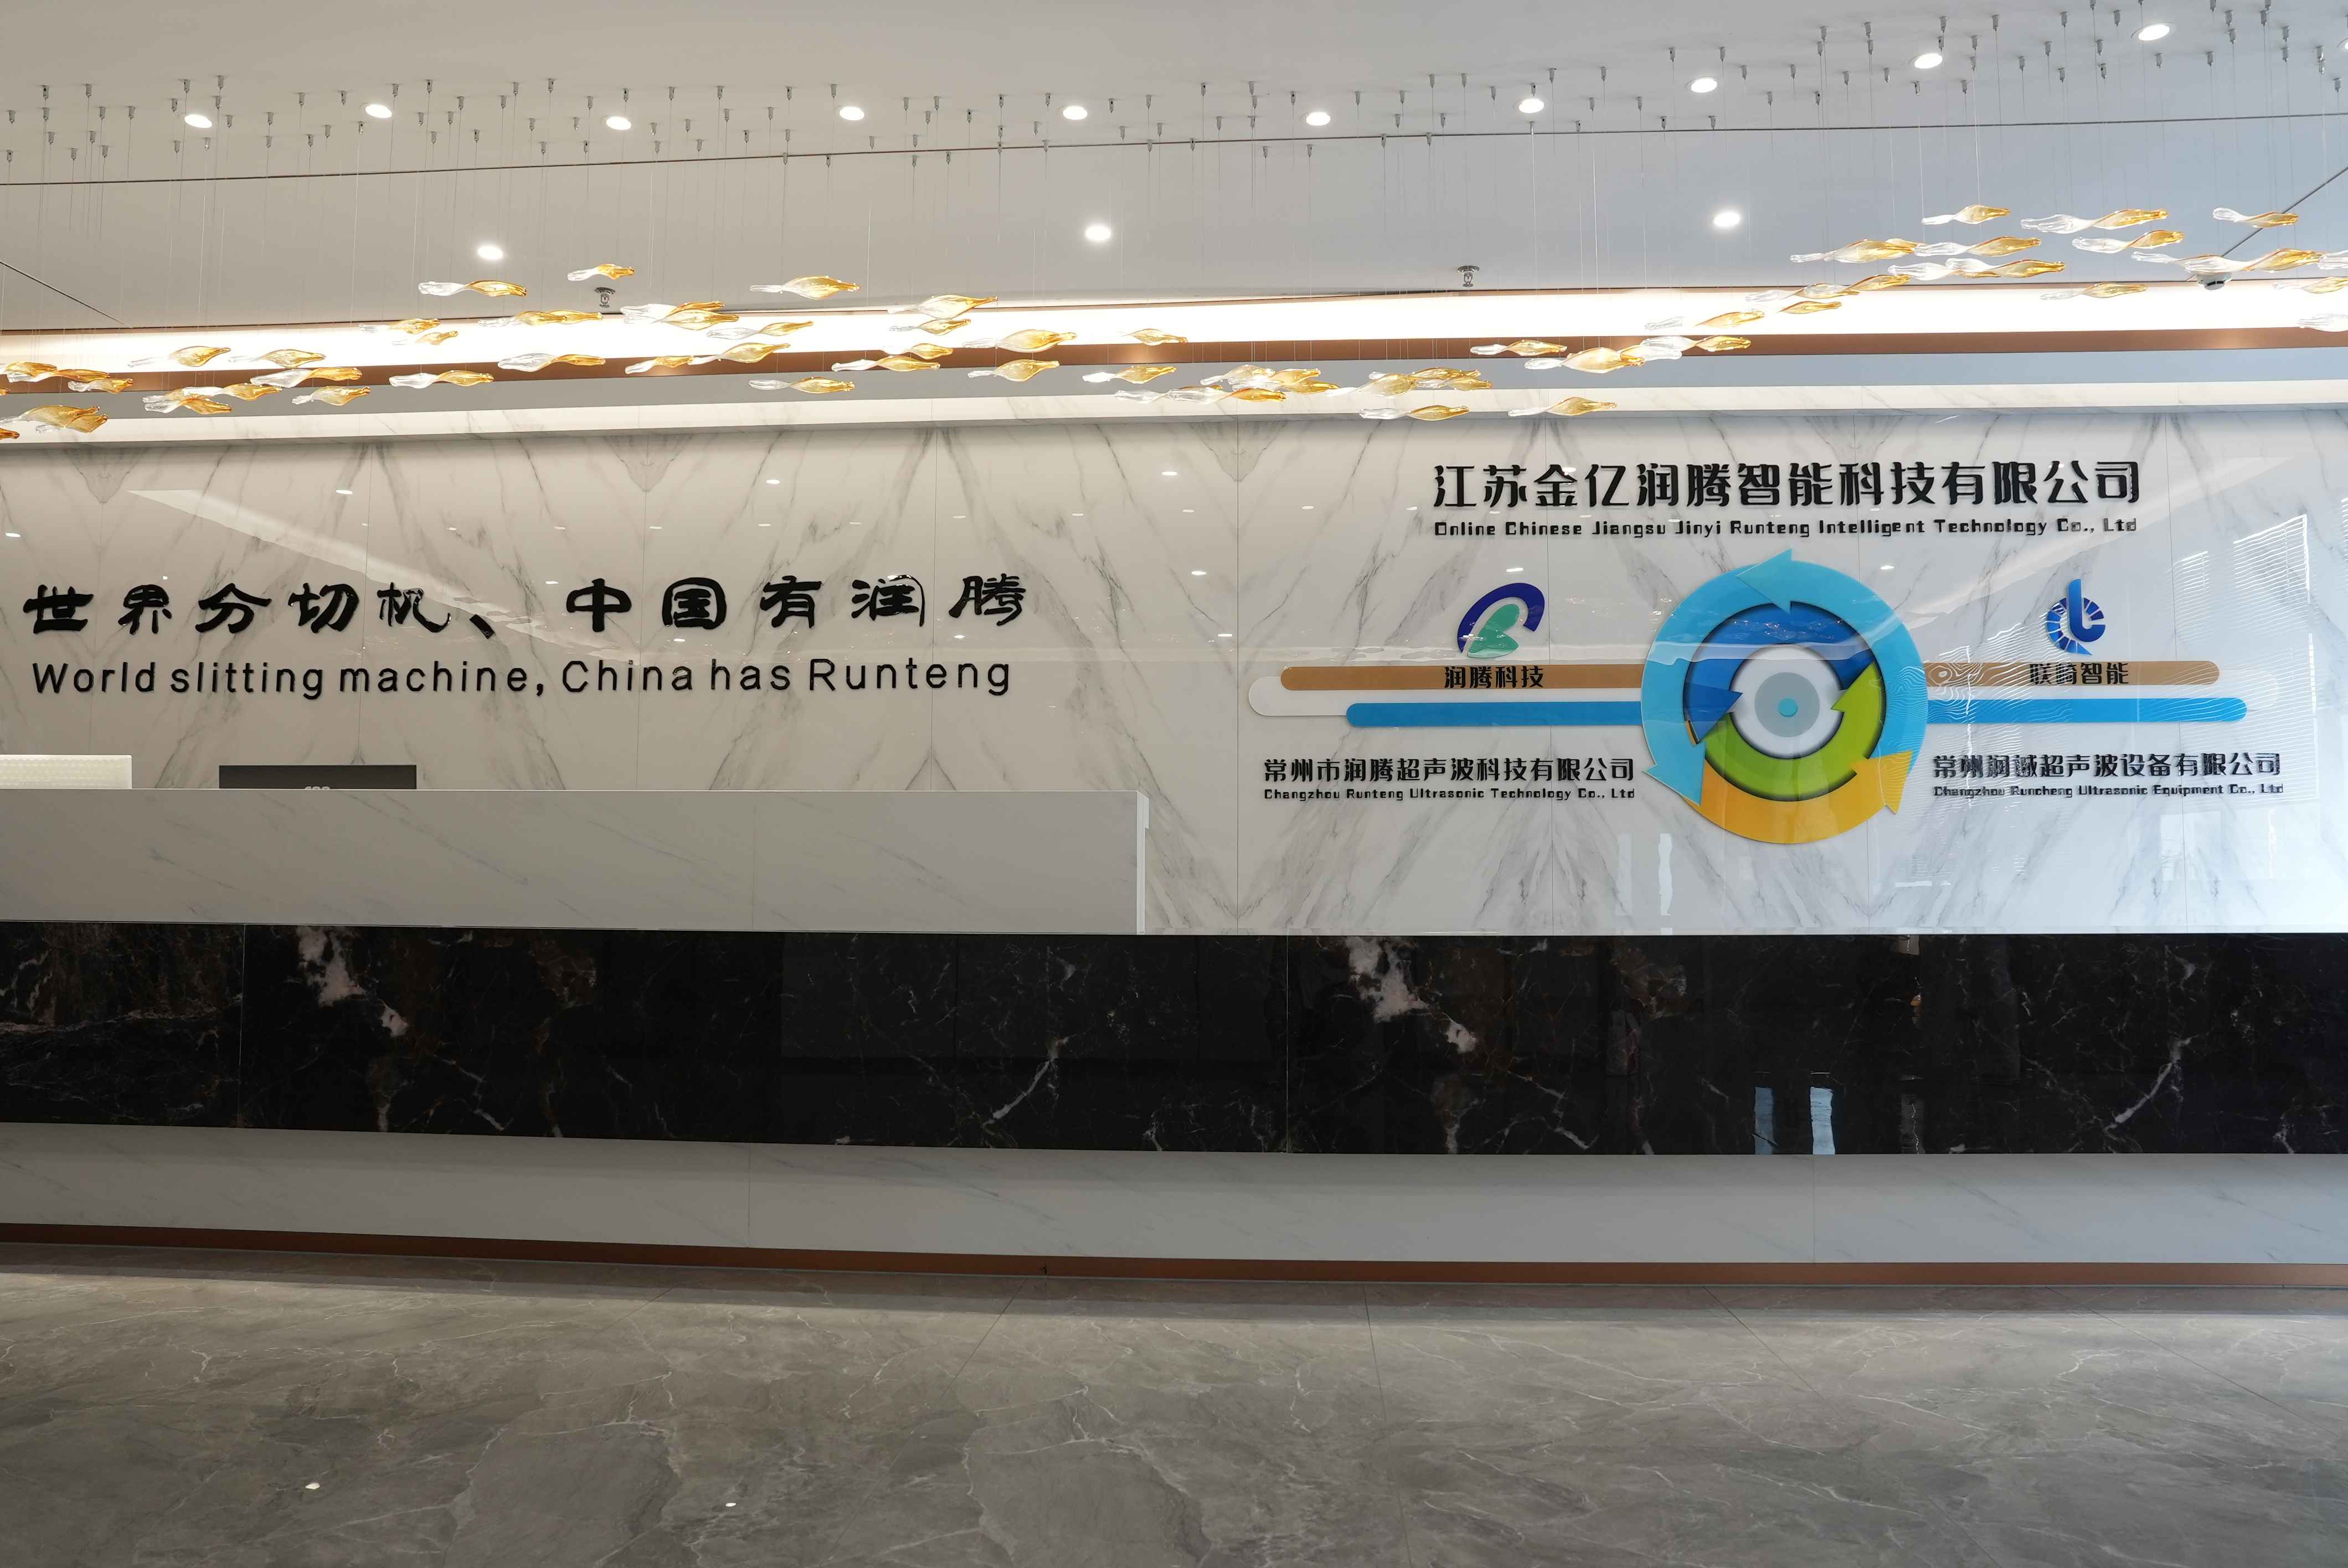 Inside the Headquarters of Changzhou Runcheng Ultrasonic Equipment Co., Ltd.